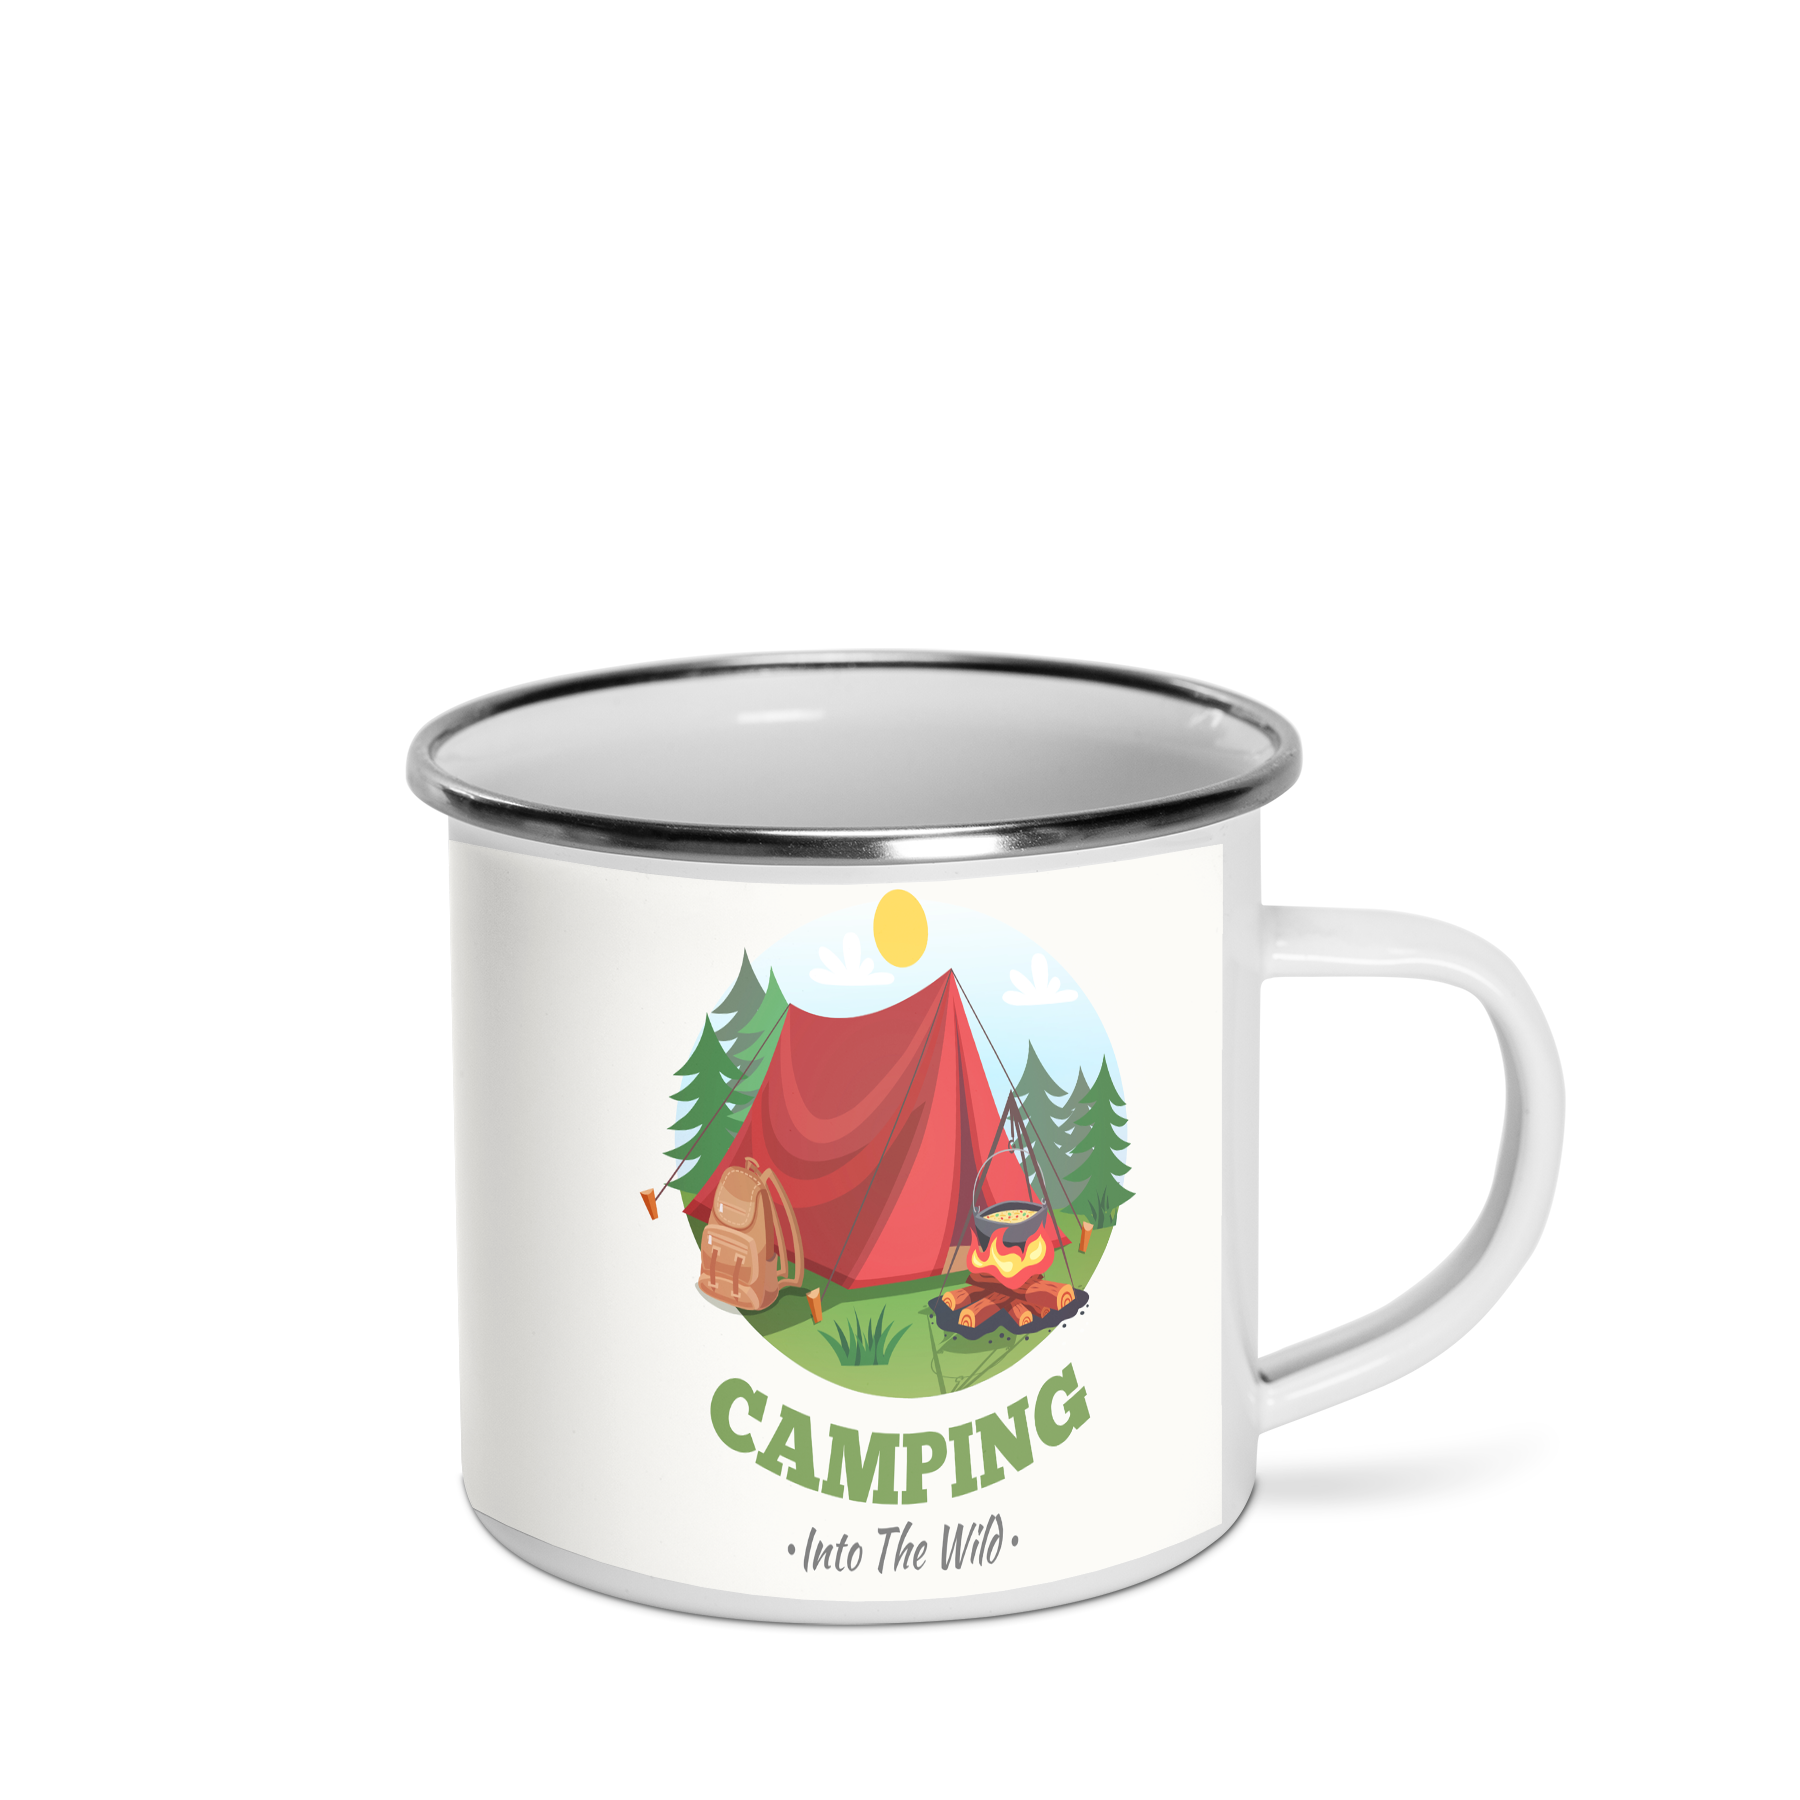 Campfire Mug